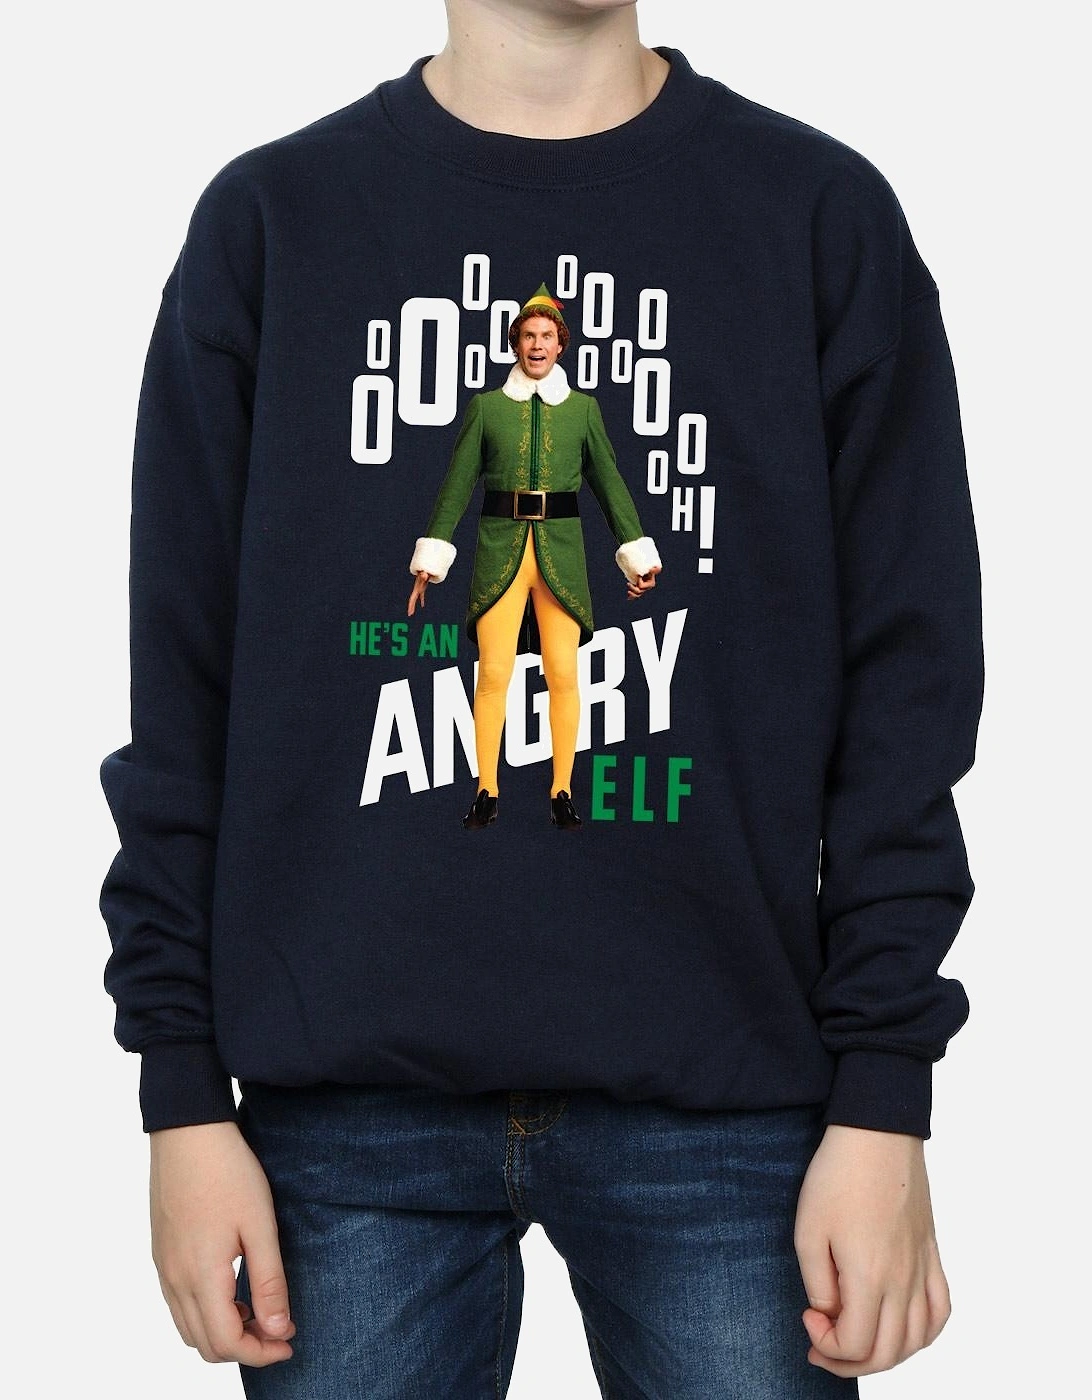 Boys Angry Sweatshirt